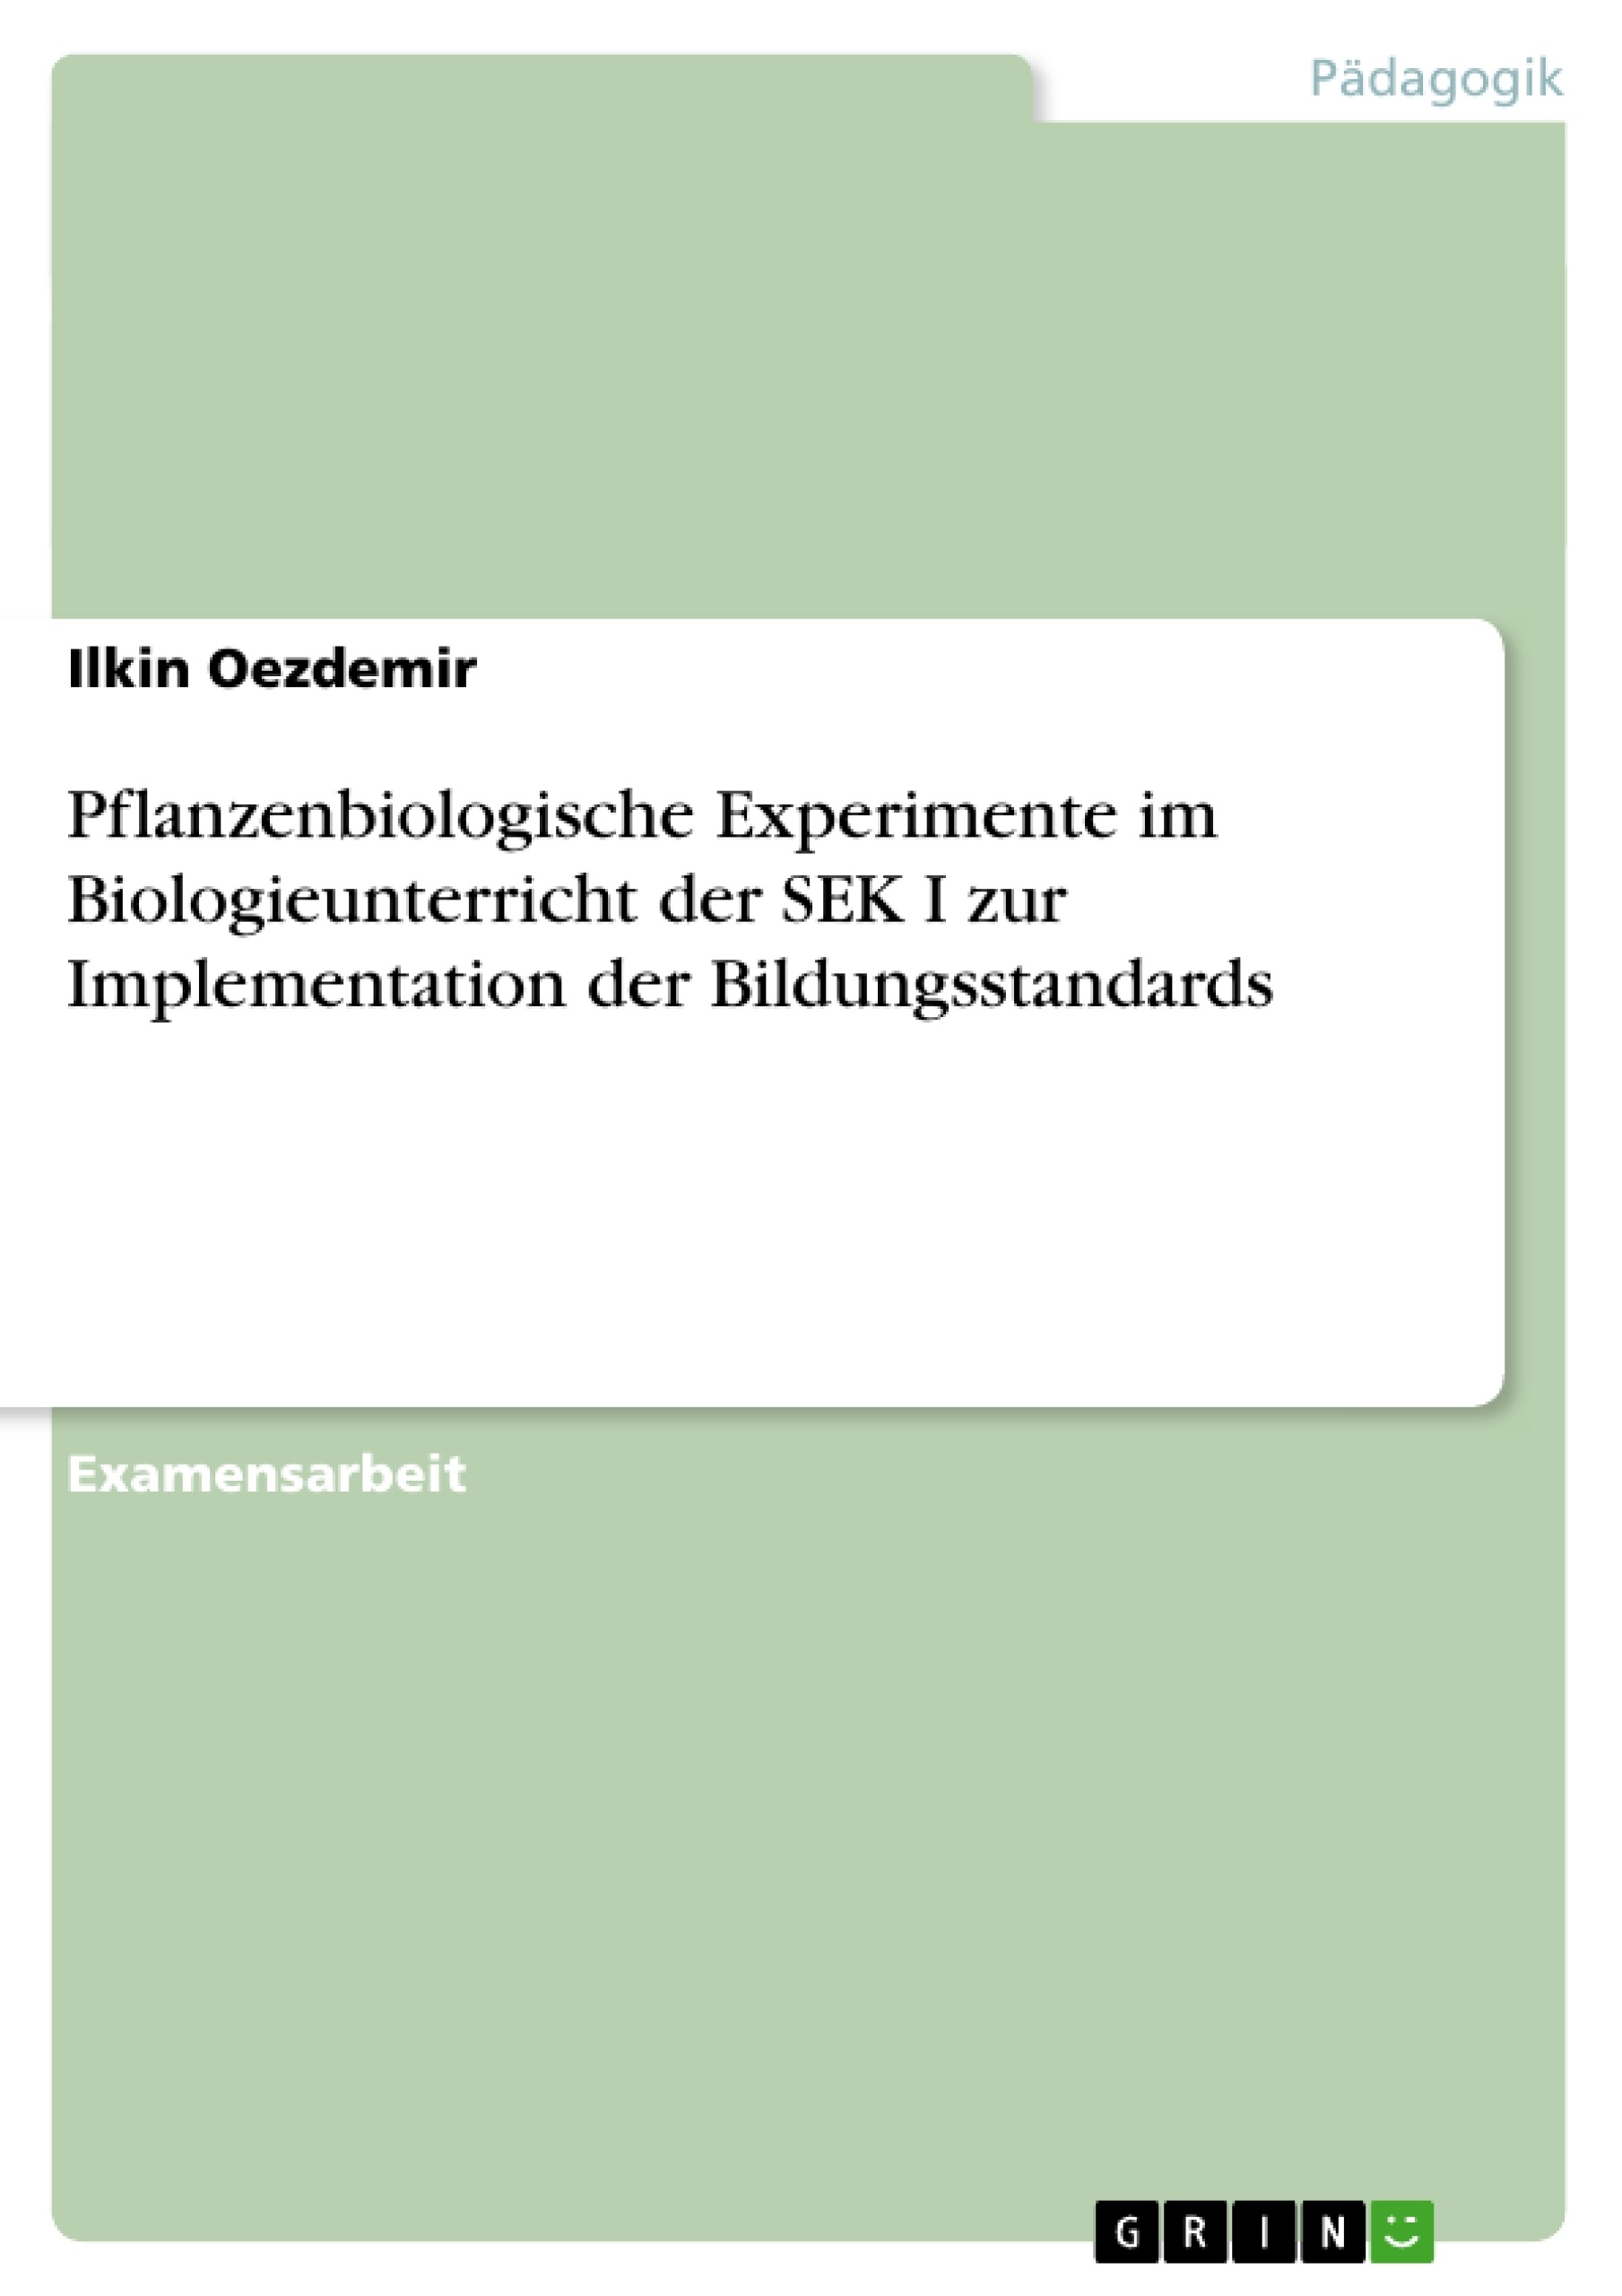 Título: Pflanzenbiologische Experimente im Biologieunterricht der SEK I zur Implementation der Bildungsstandards